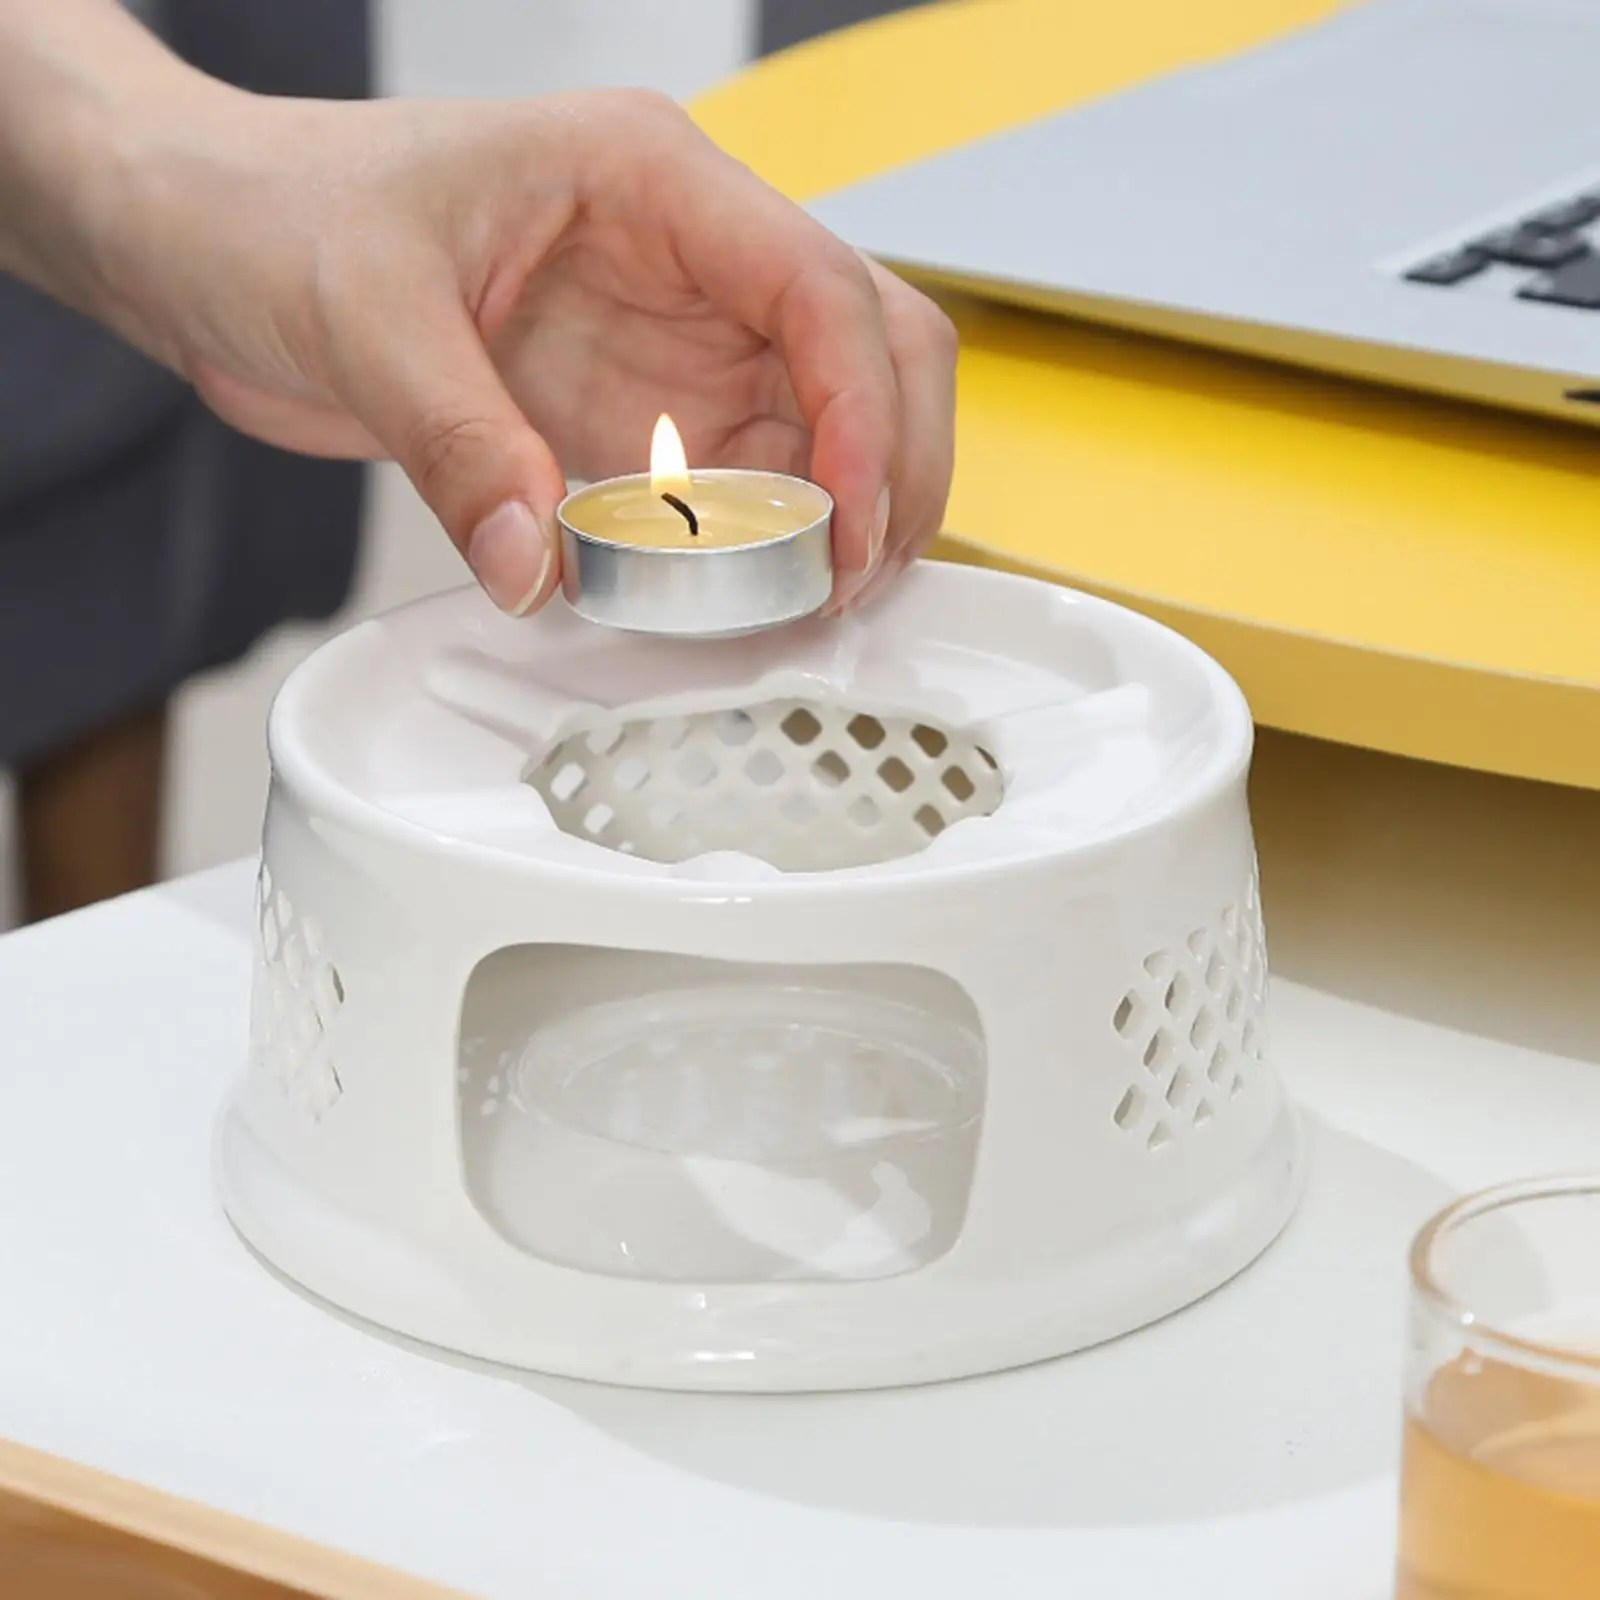 Ceramic Teapot Warmer Dish Cup Heat Pot Table Tea Light Candle Holder for Heating Porcelain Teapot Metal Teapot Tea Kettles Jug